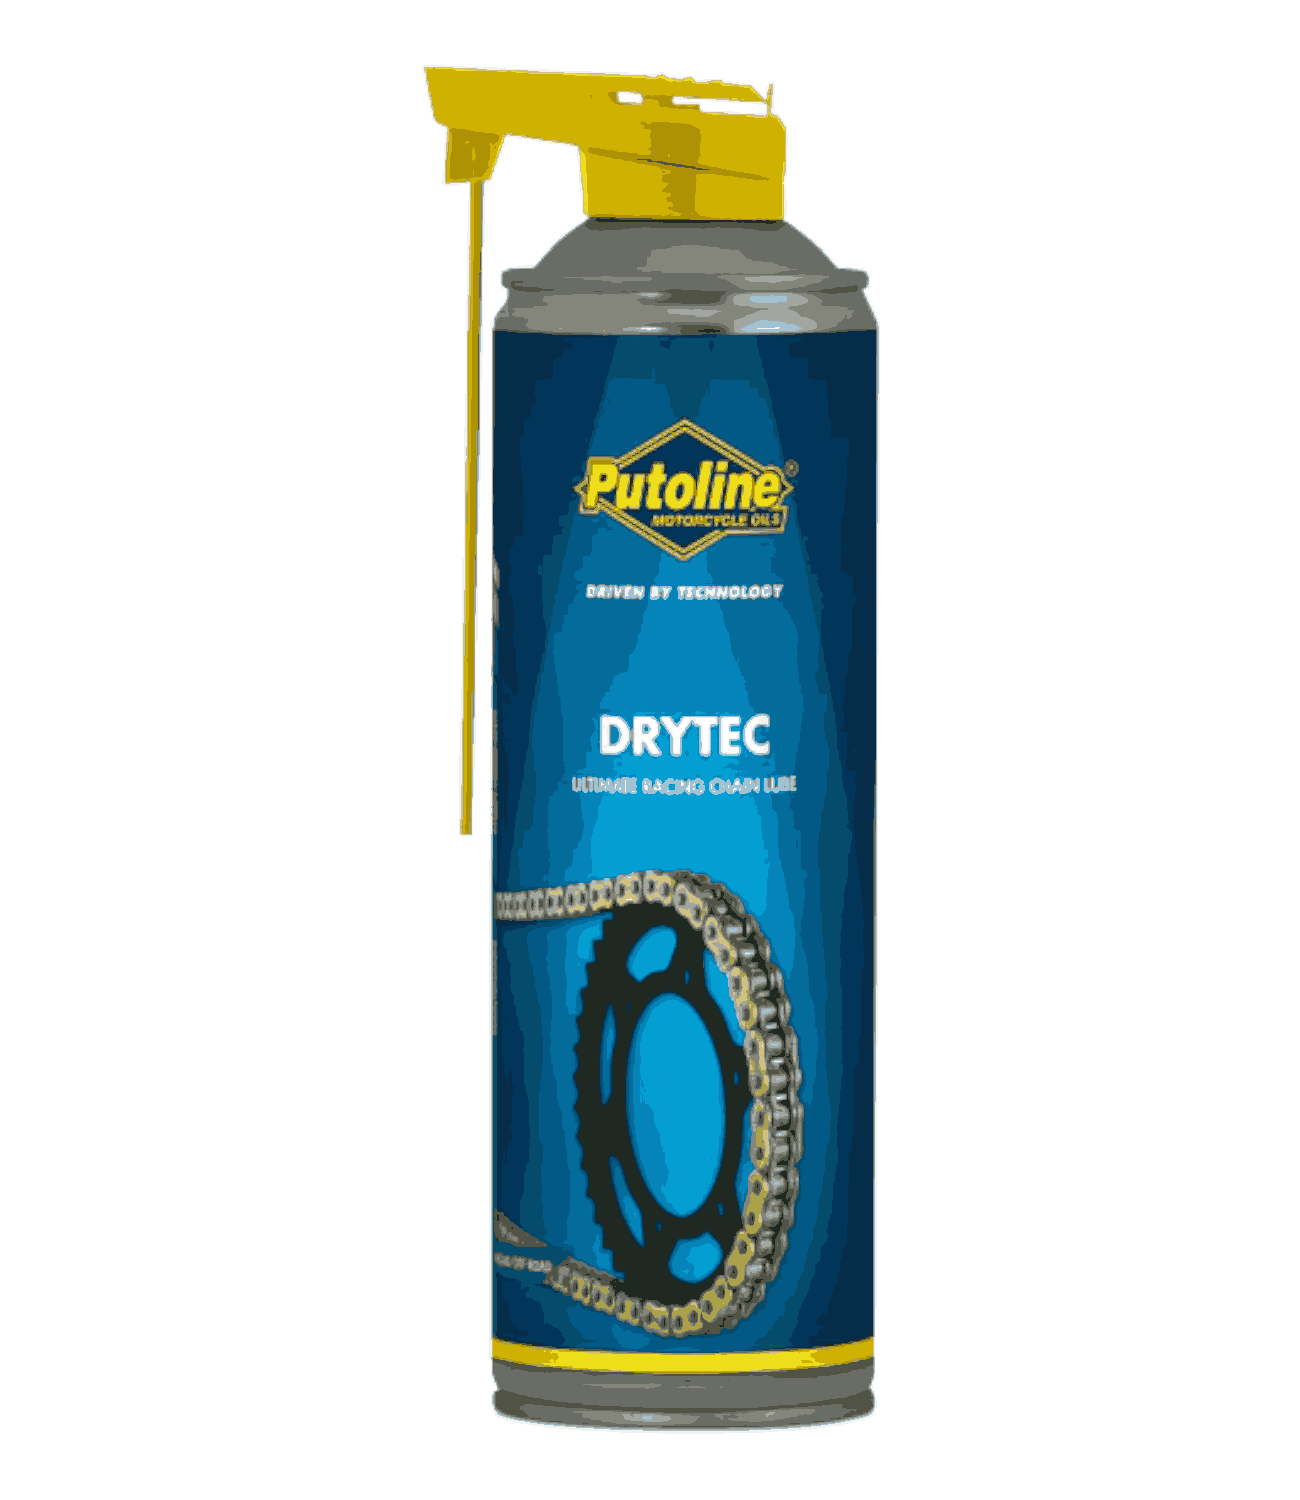 Putoline Drytec Chain Lube